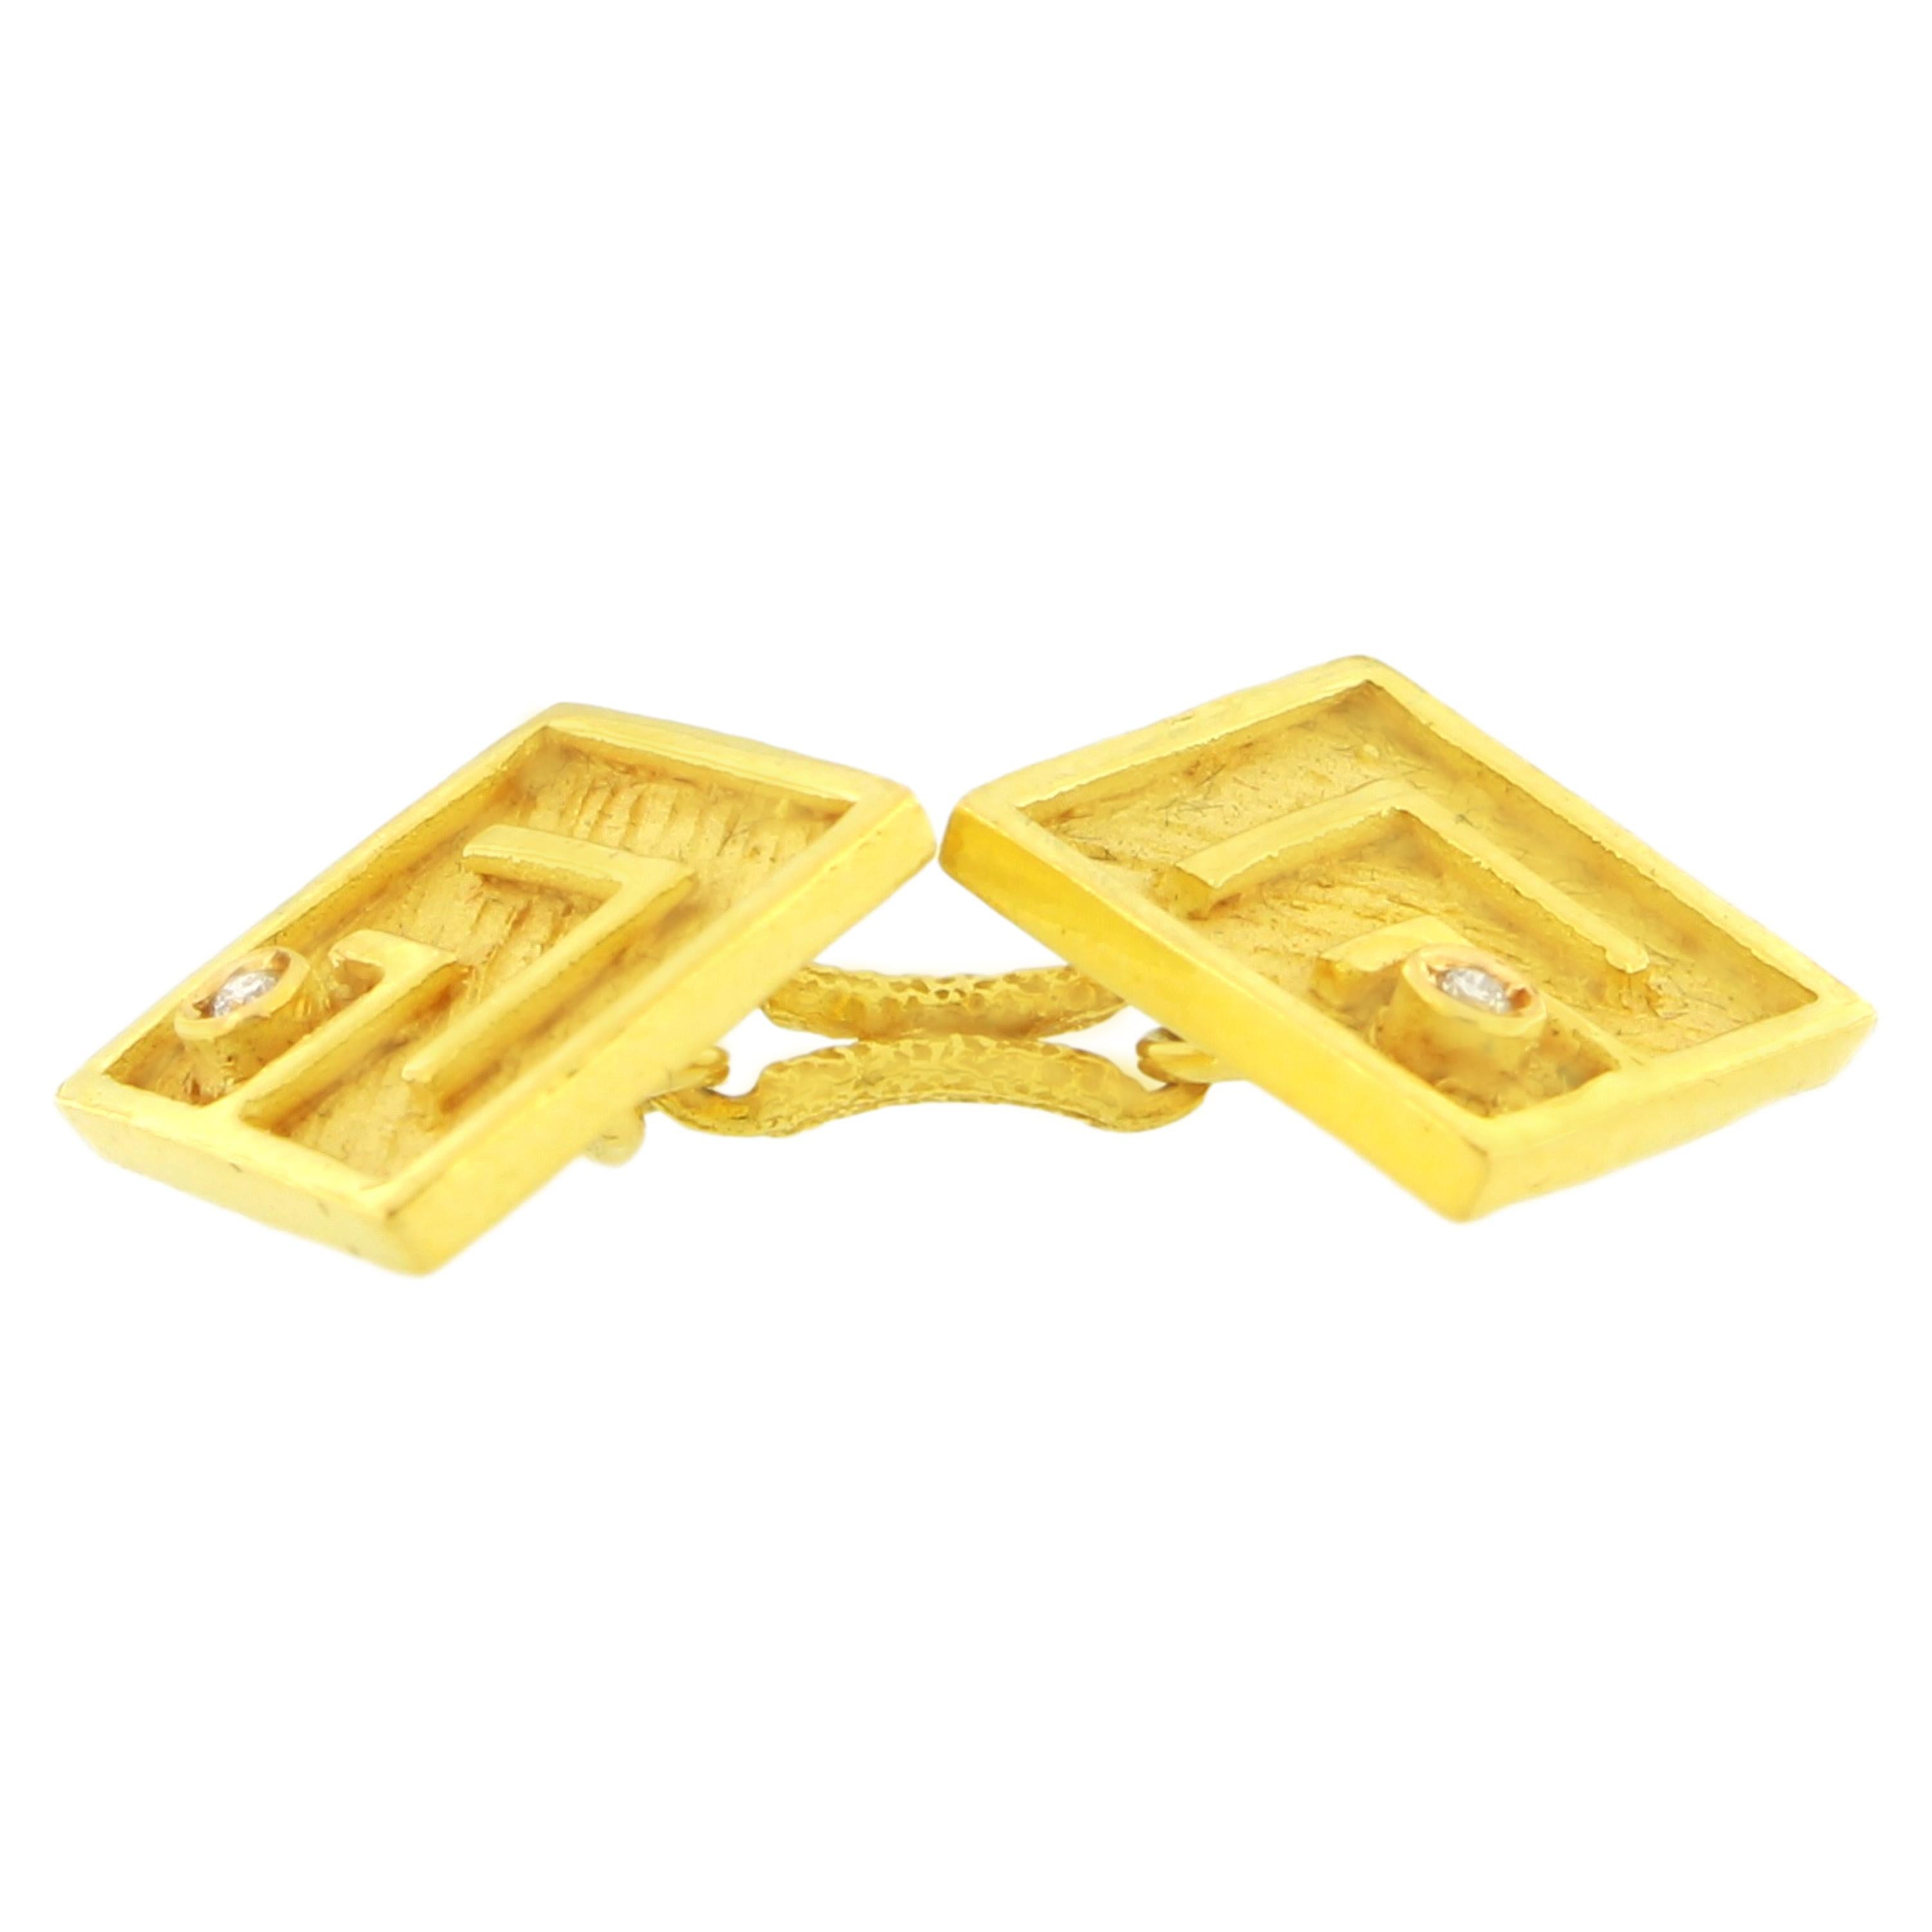 Sacchi Diamond Gemstone 18 Karat Satin Yellow Gold Square Chain Link Cufflinks (Rundschliff)